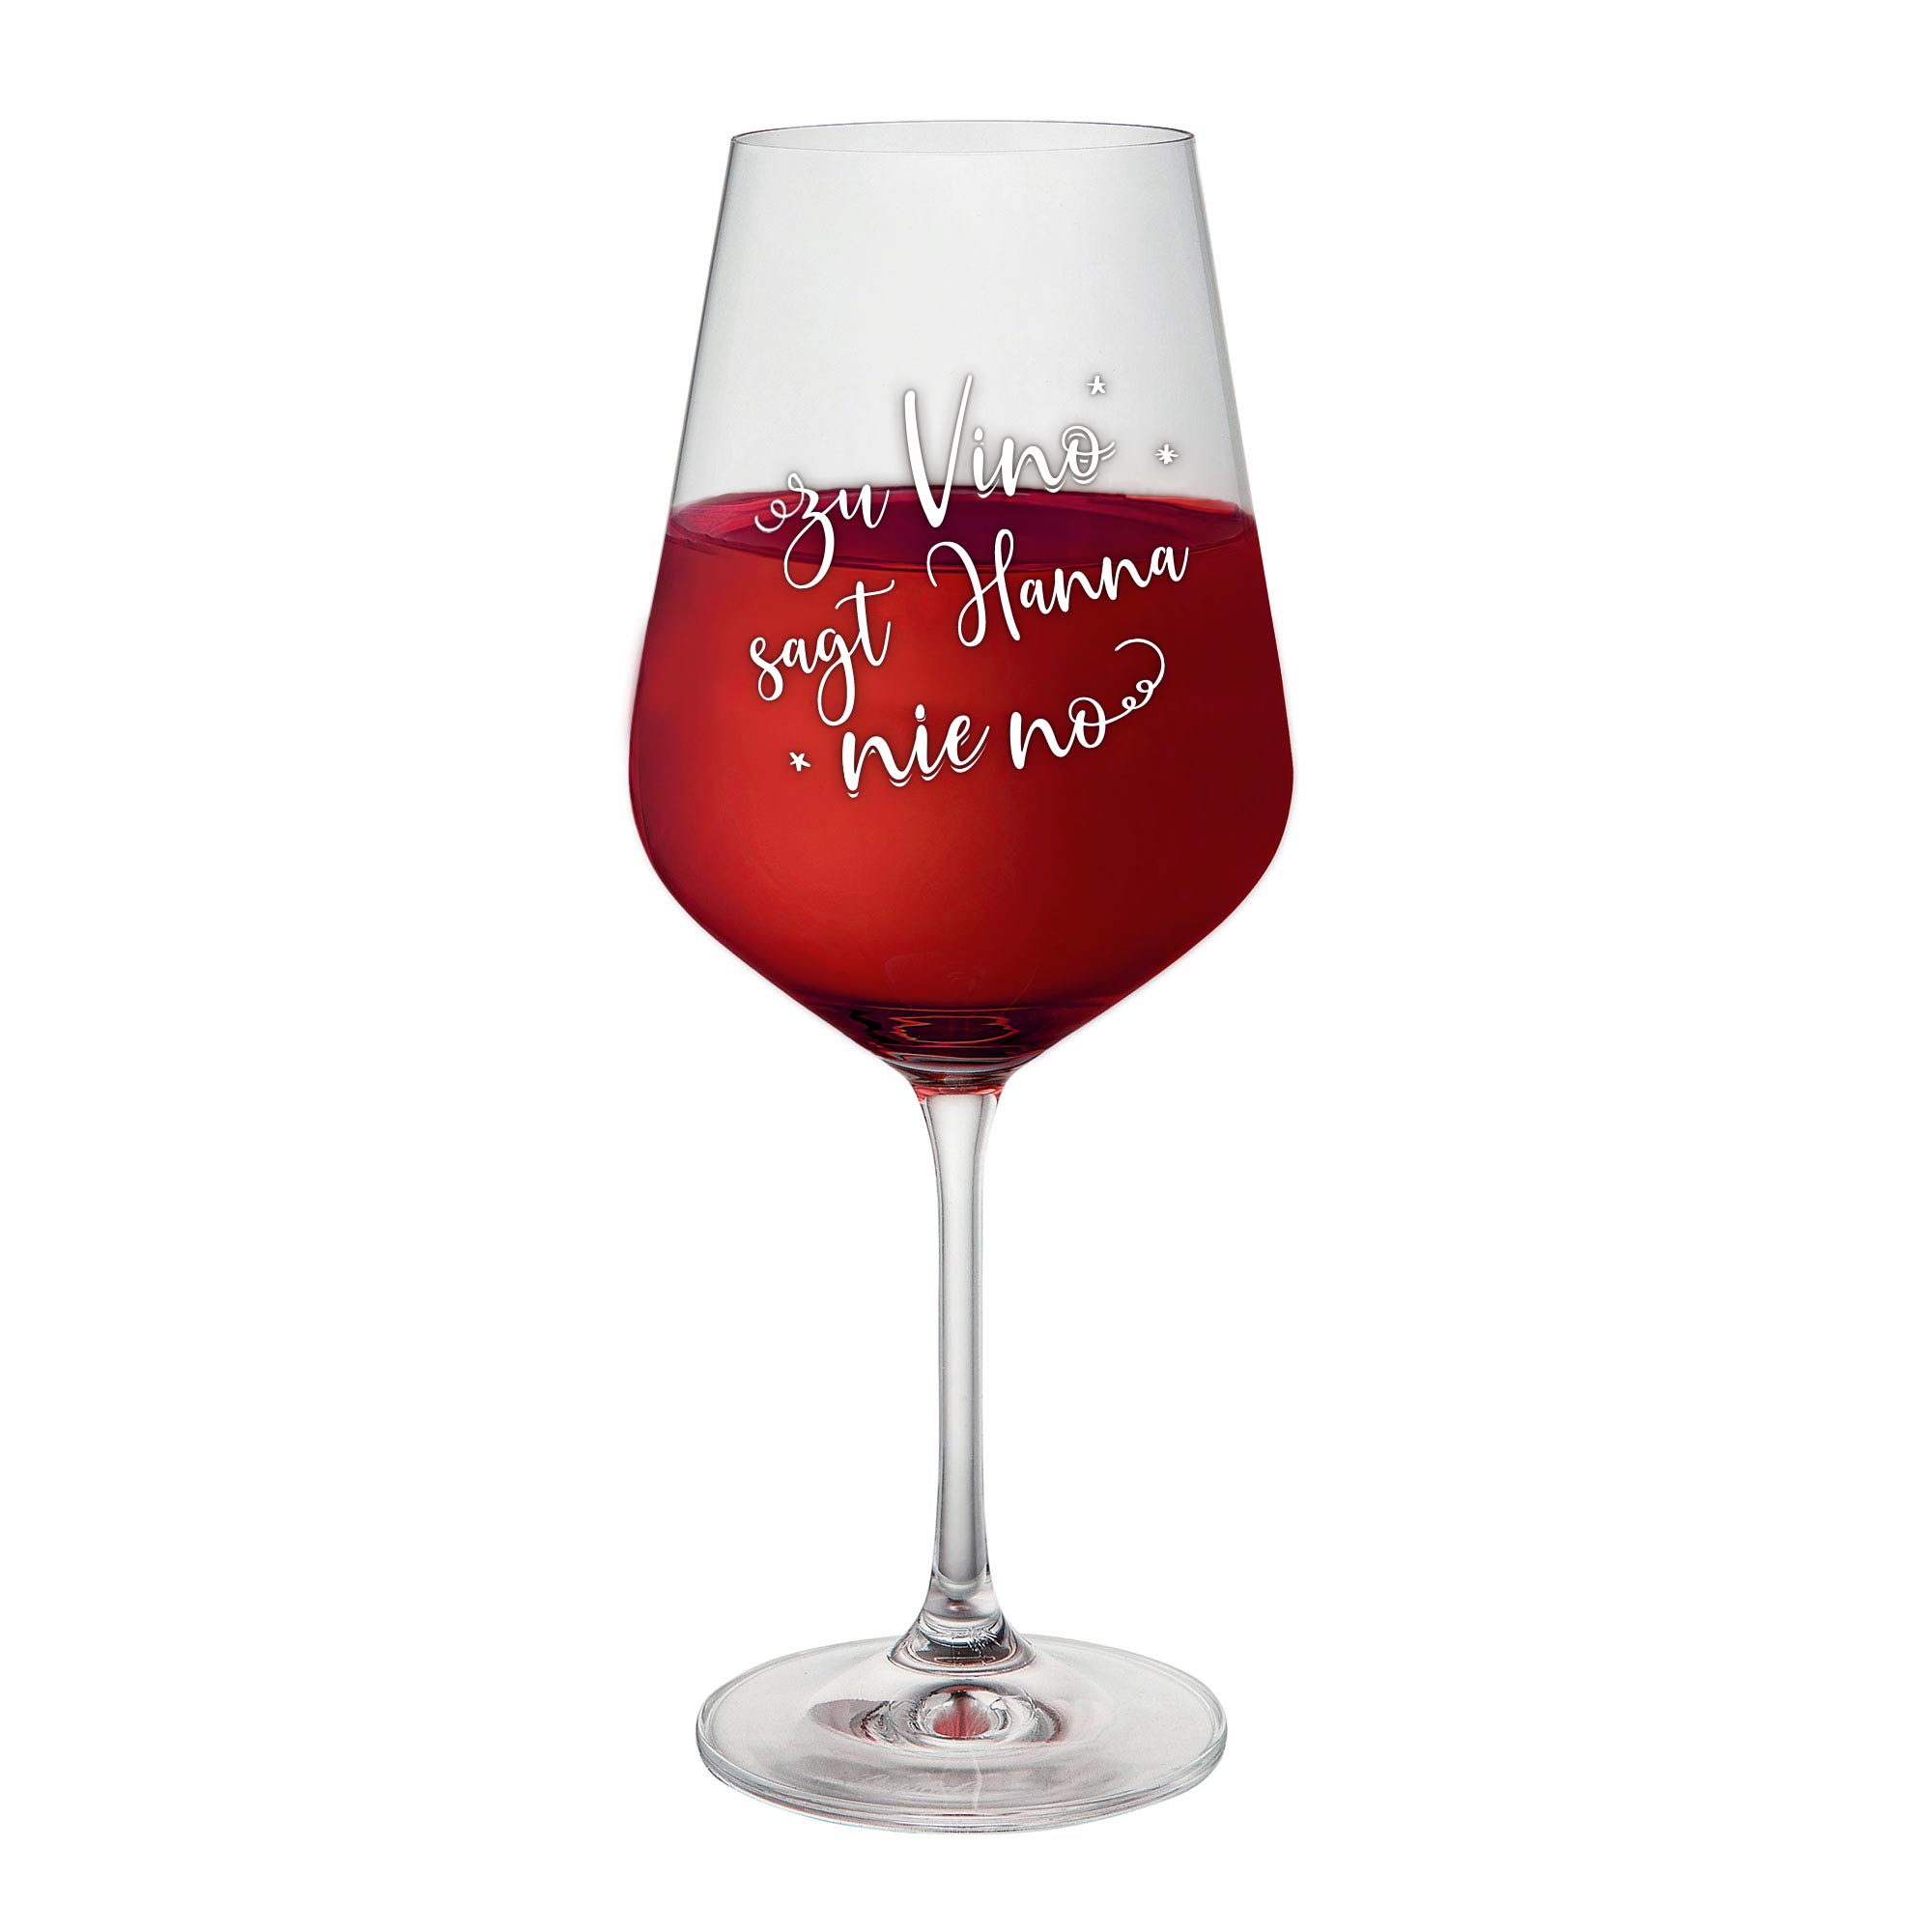 Weinglas - Zu Vino sagt "Name" nie no - Personalisiert